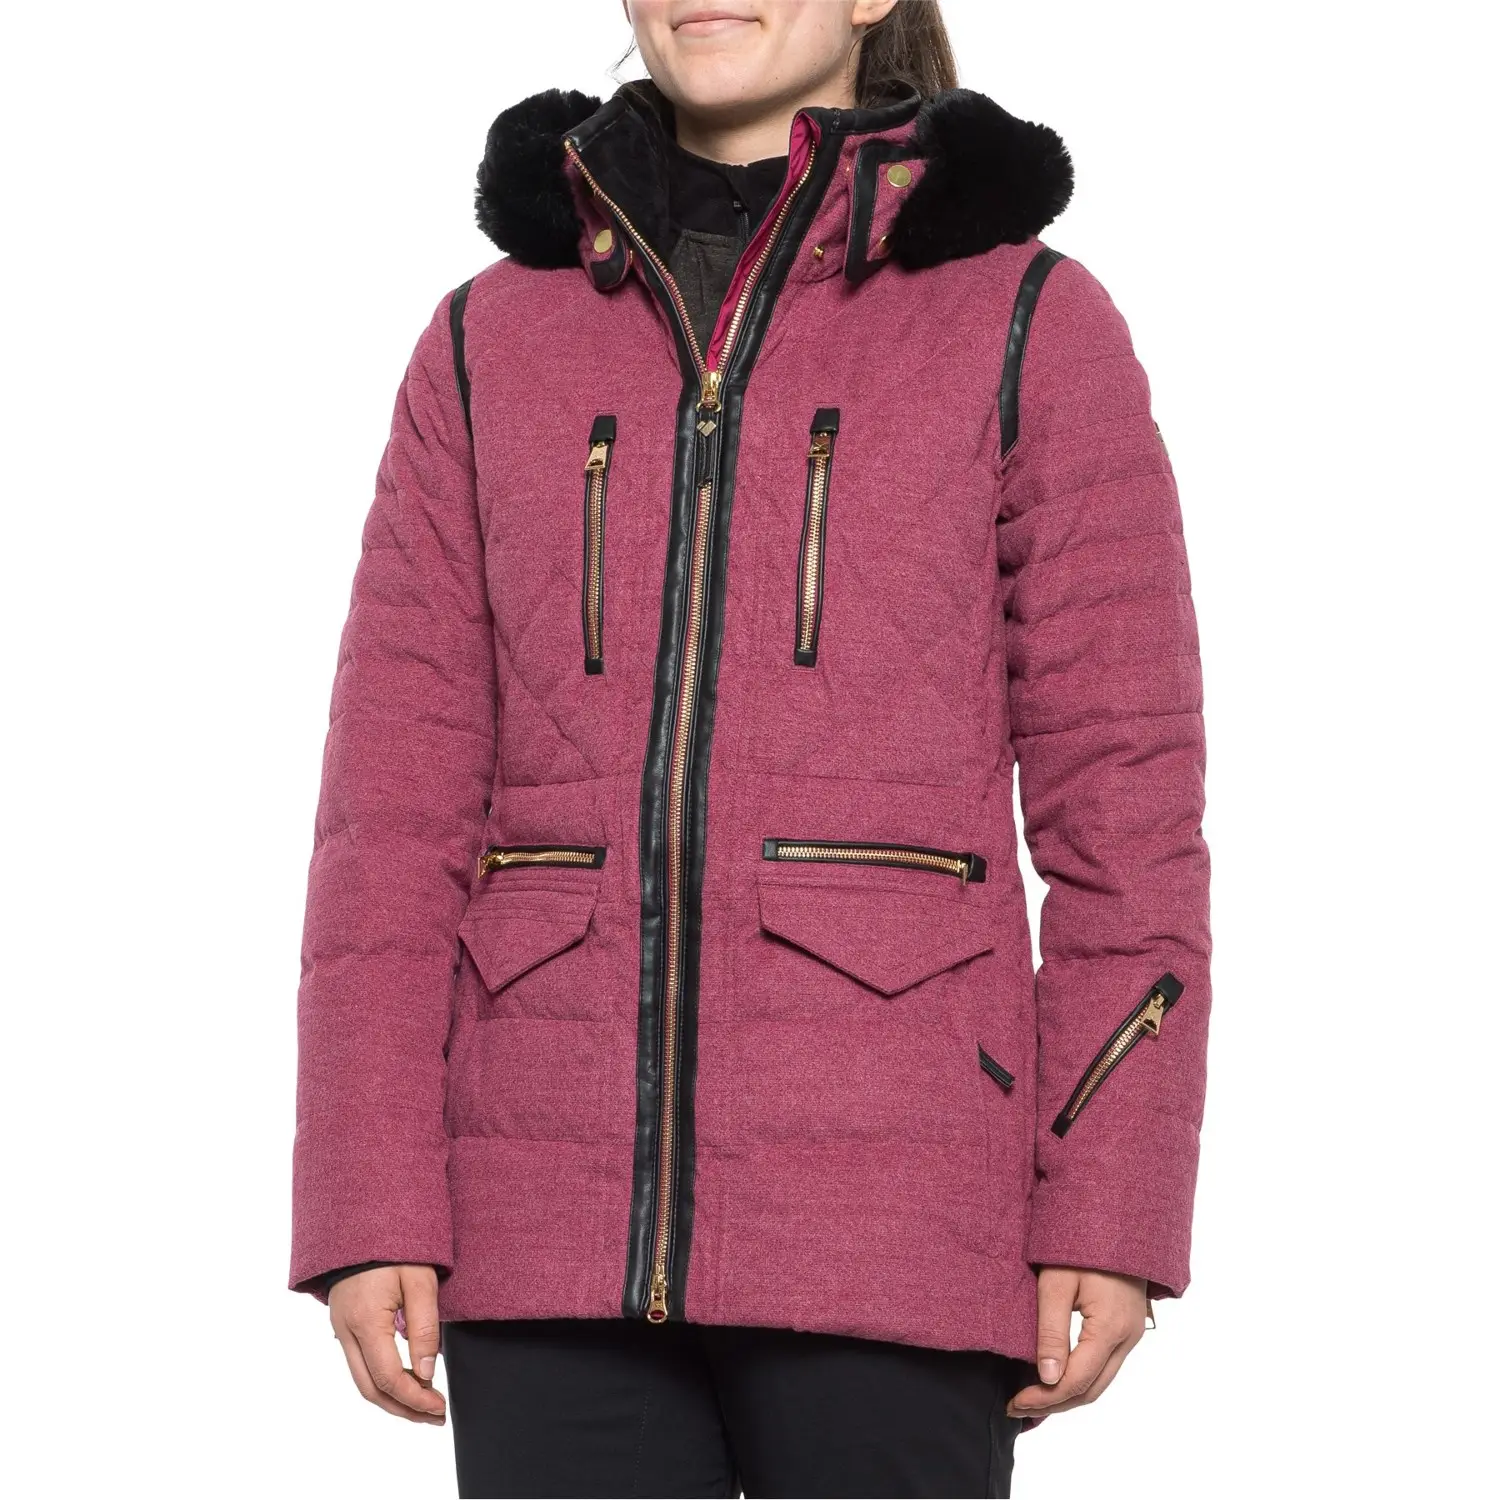 Зимние парки, пальто, повседневное пуховое пальто на молнии с длинным рукавом и принтом, женская одежда, теплое пуховое пальто с подкладкой, пузырьковая куртка